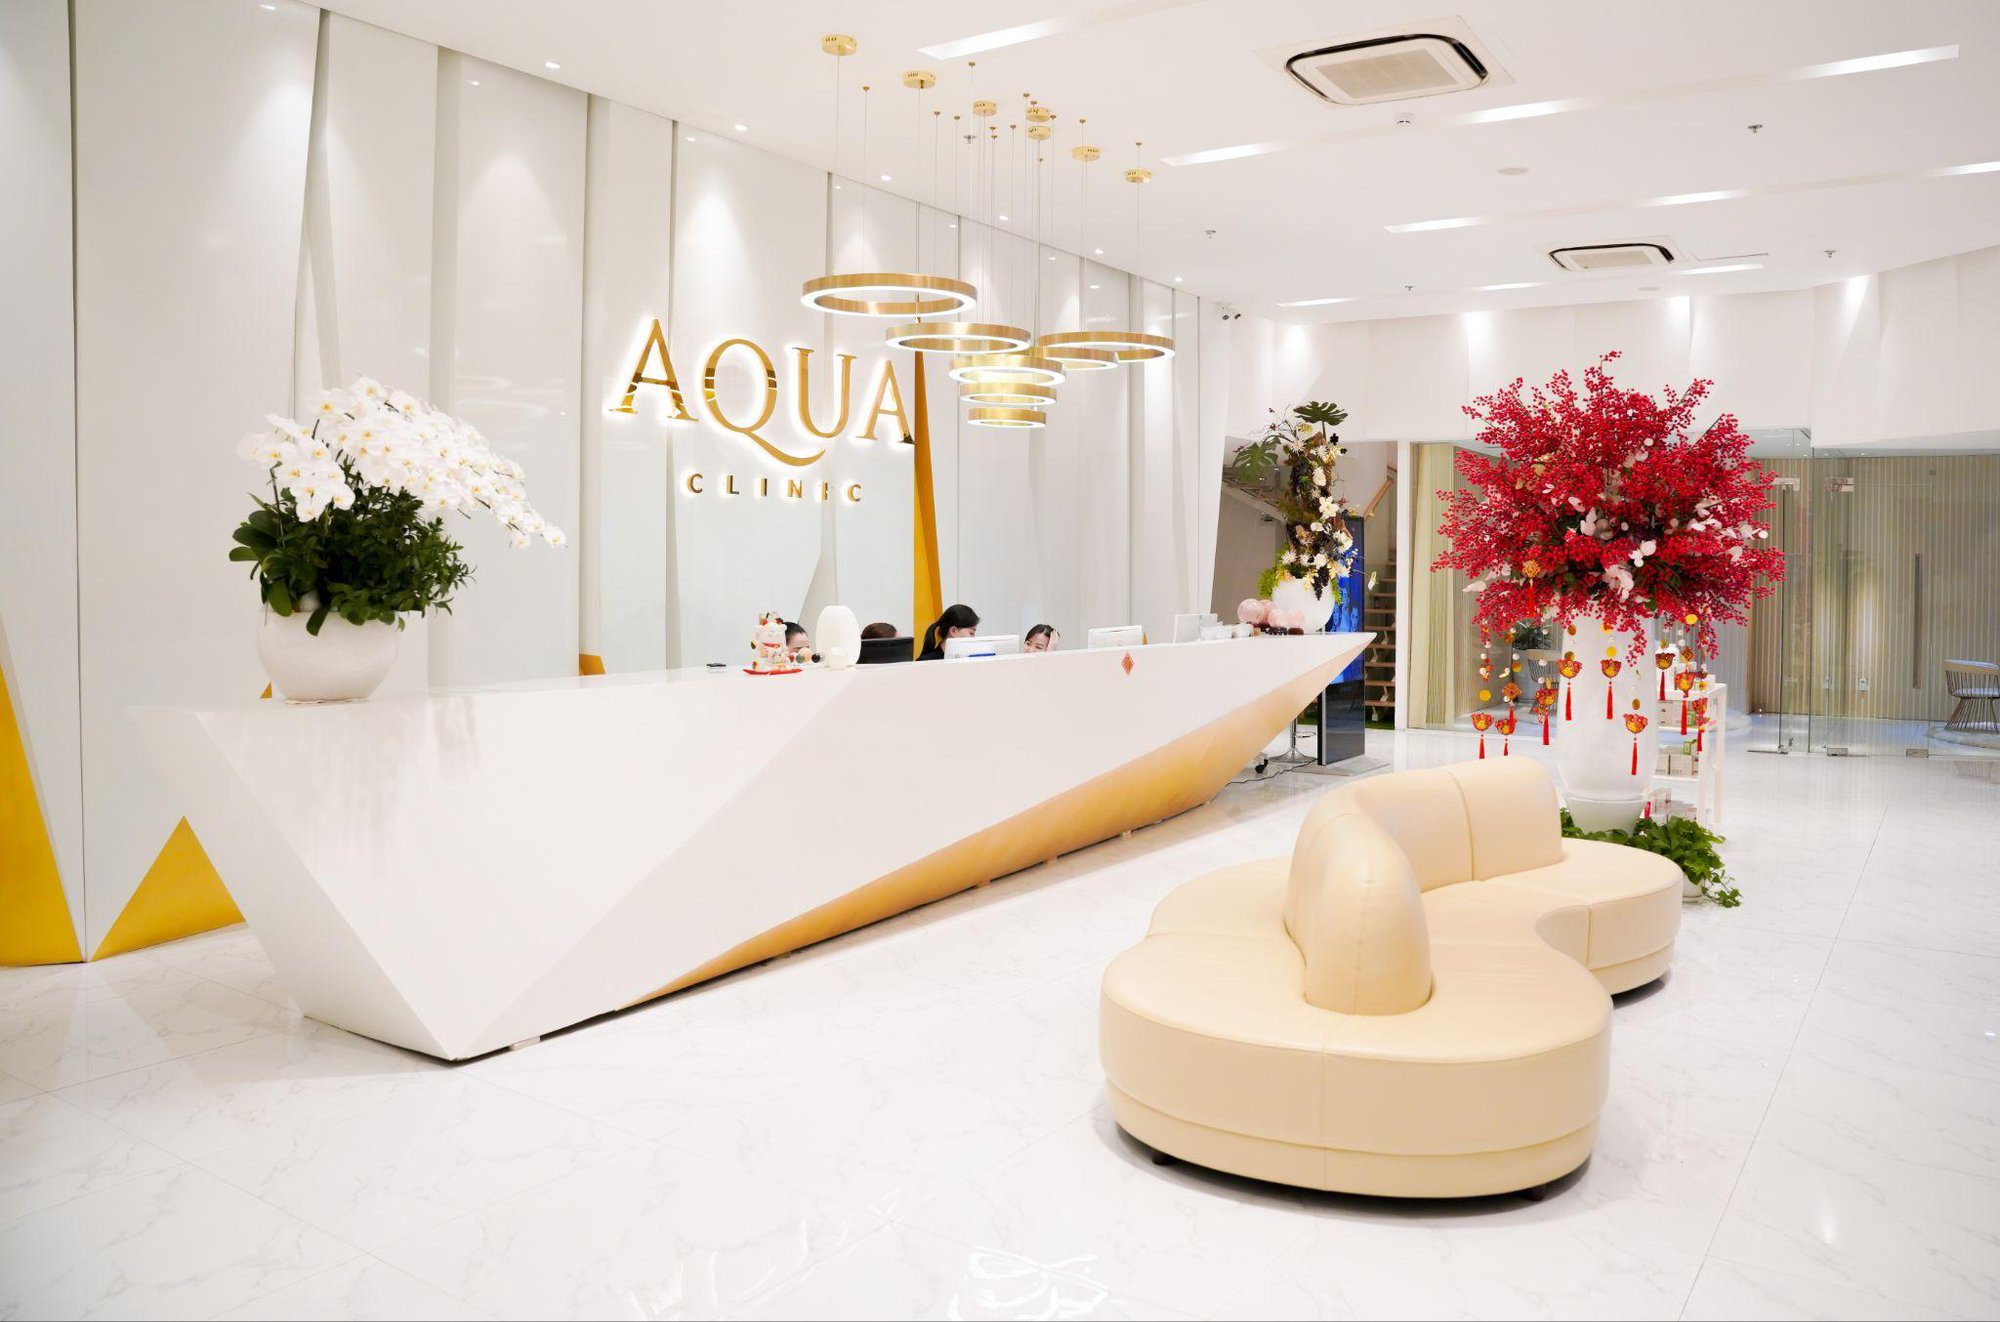 Aqua Clinic ra mắt công nghệ căng bóng da hiện đại bậc nhất - Ảnh 3.